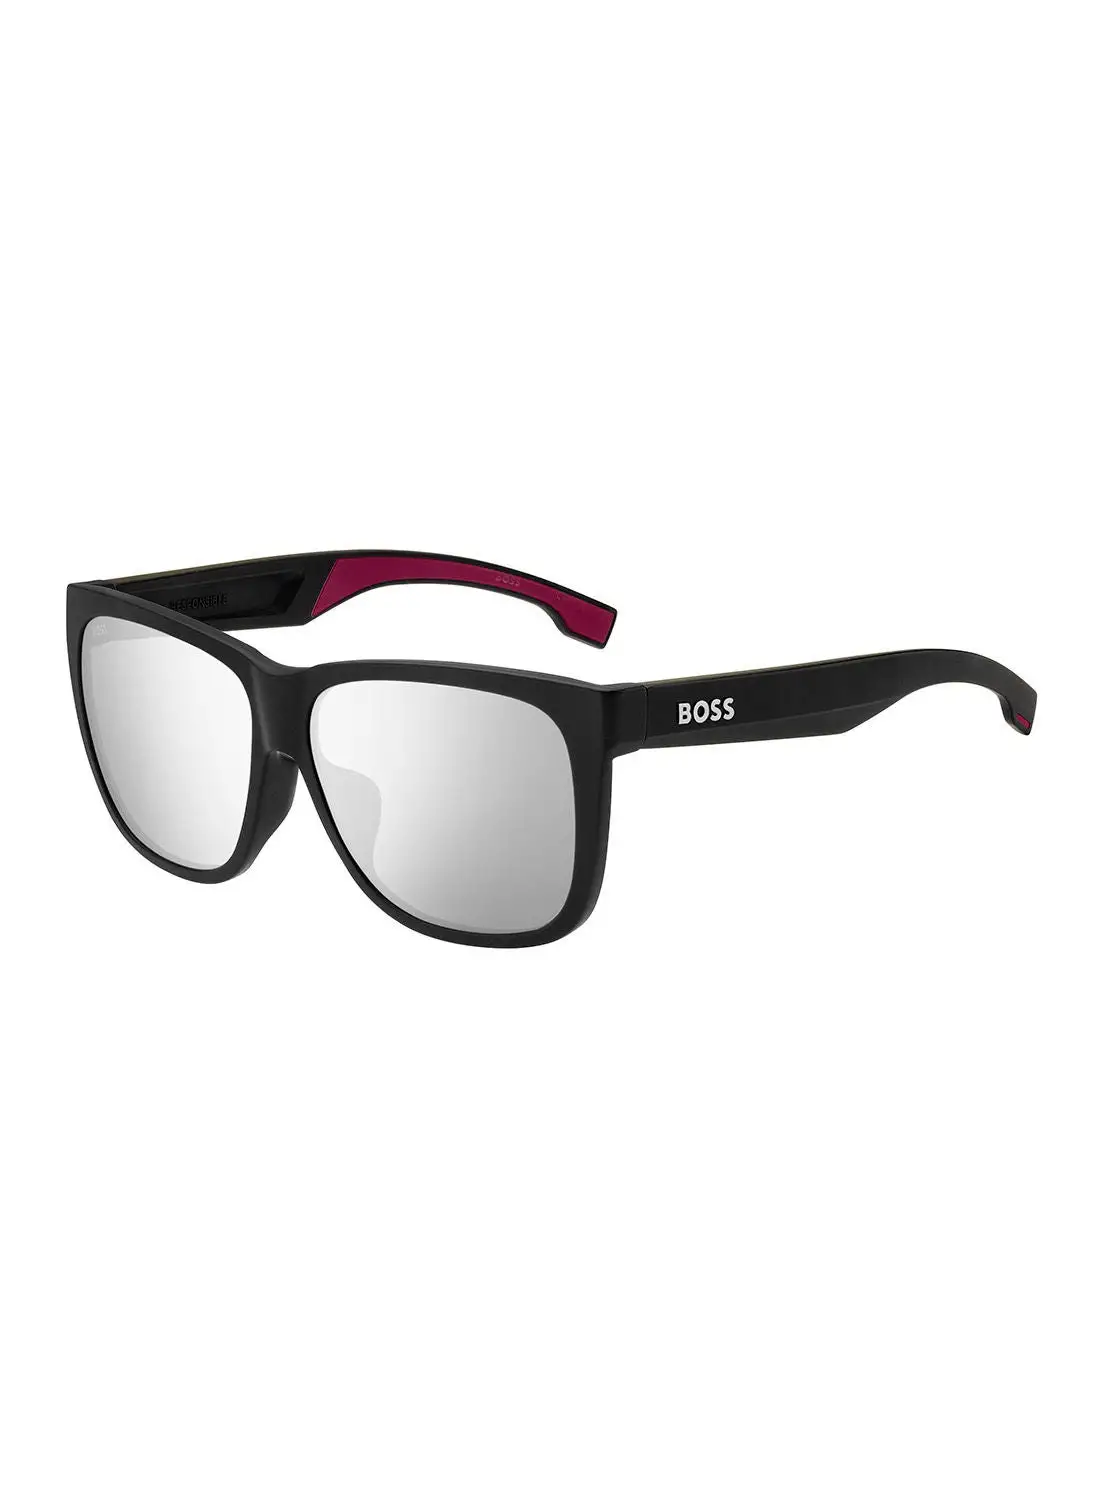 HUGO BOSS نظارات شمسية مربعة للرجال للحماية من الأشعة فوق البنفسجية - Boss 1453/F/S Mt Blkbur 61 - مقاس العدسة: 61 ملم